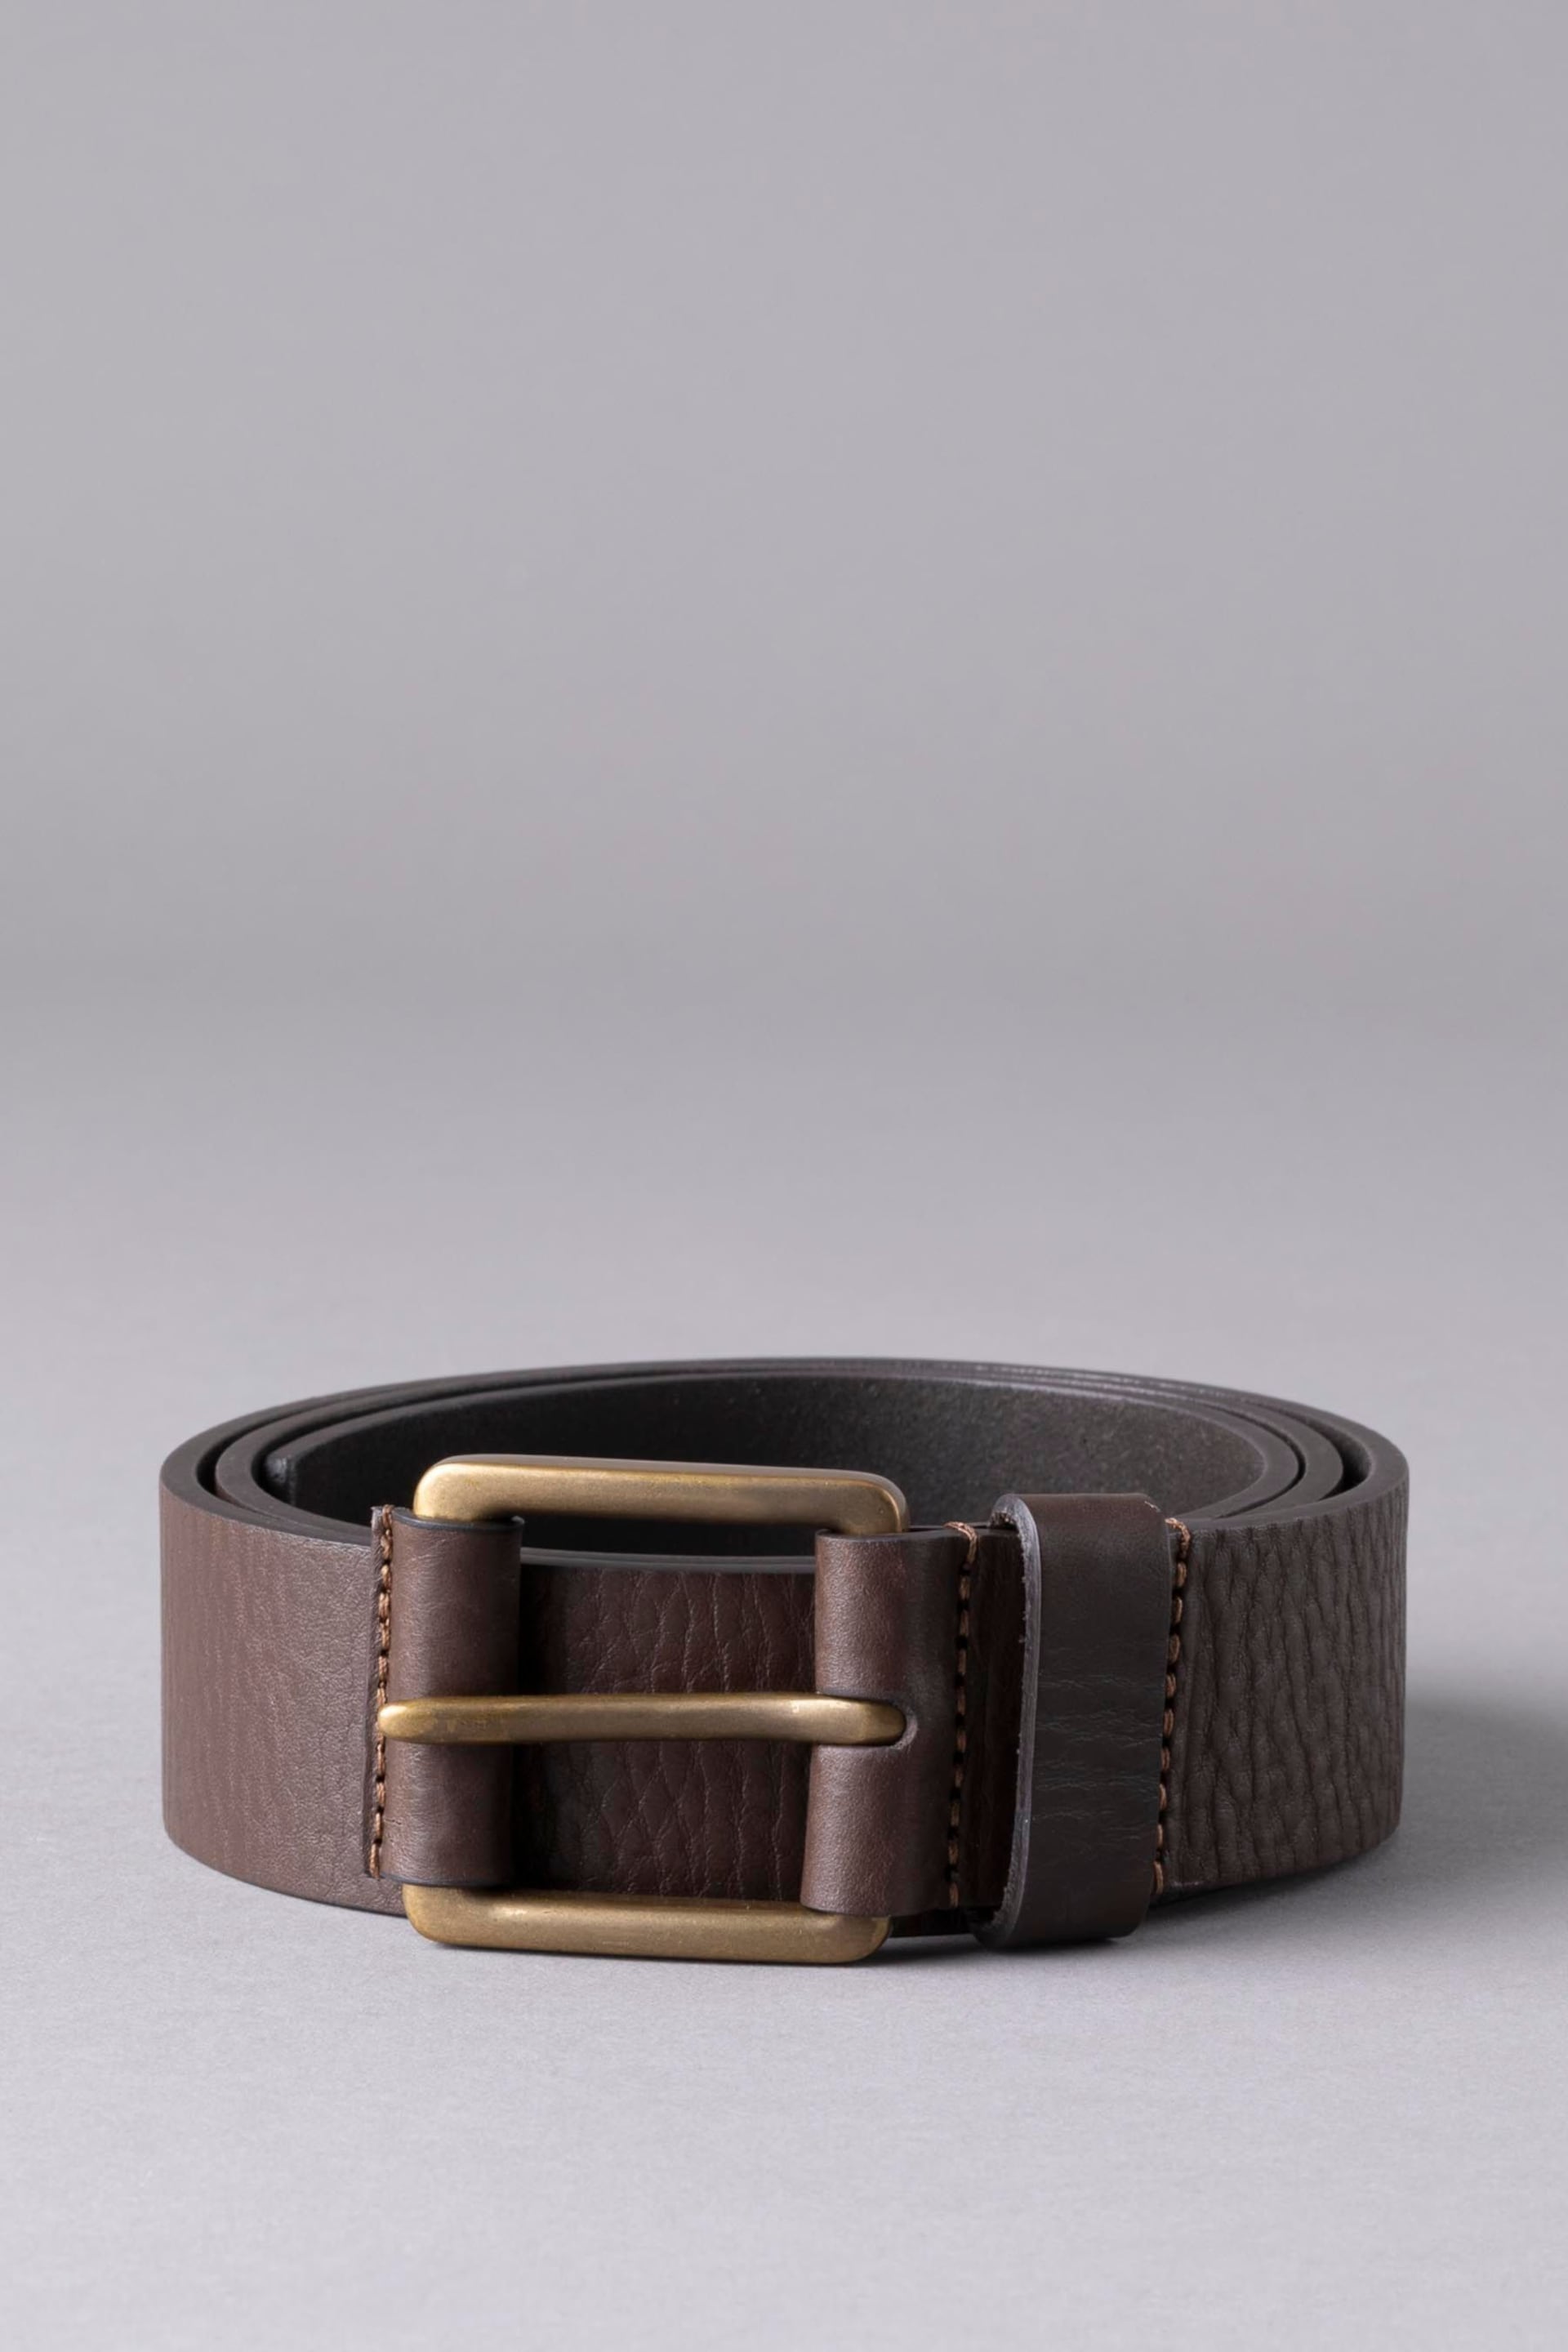 Lakeland Leather Brown Braithwaite Leather Belt - Image 1 of 3